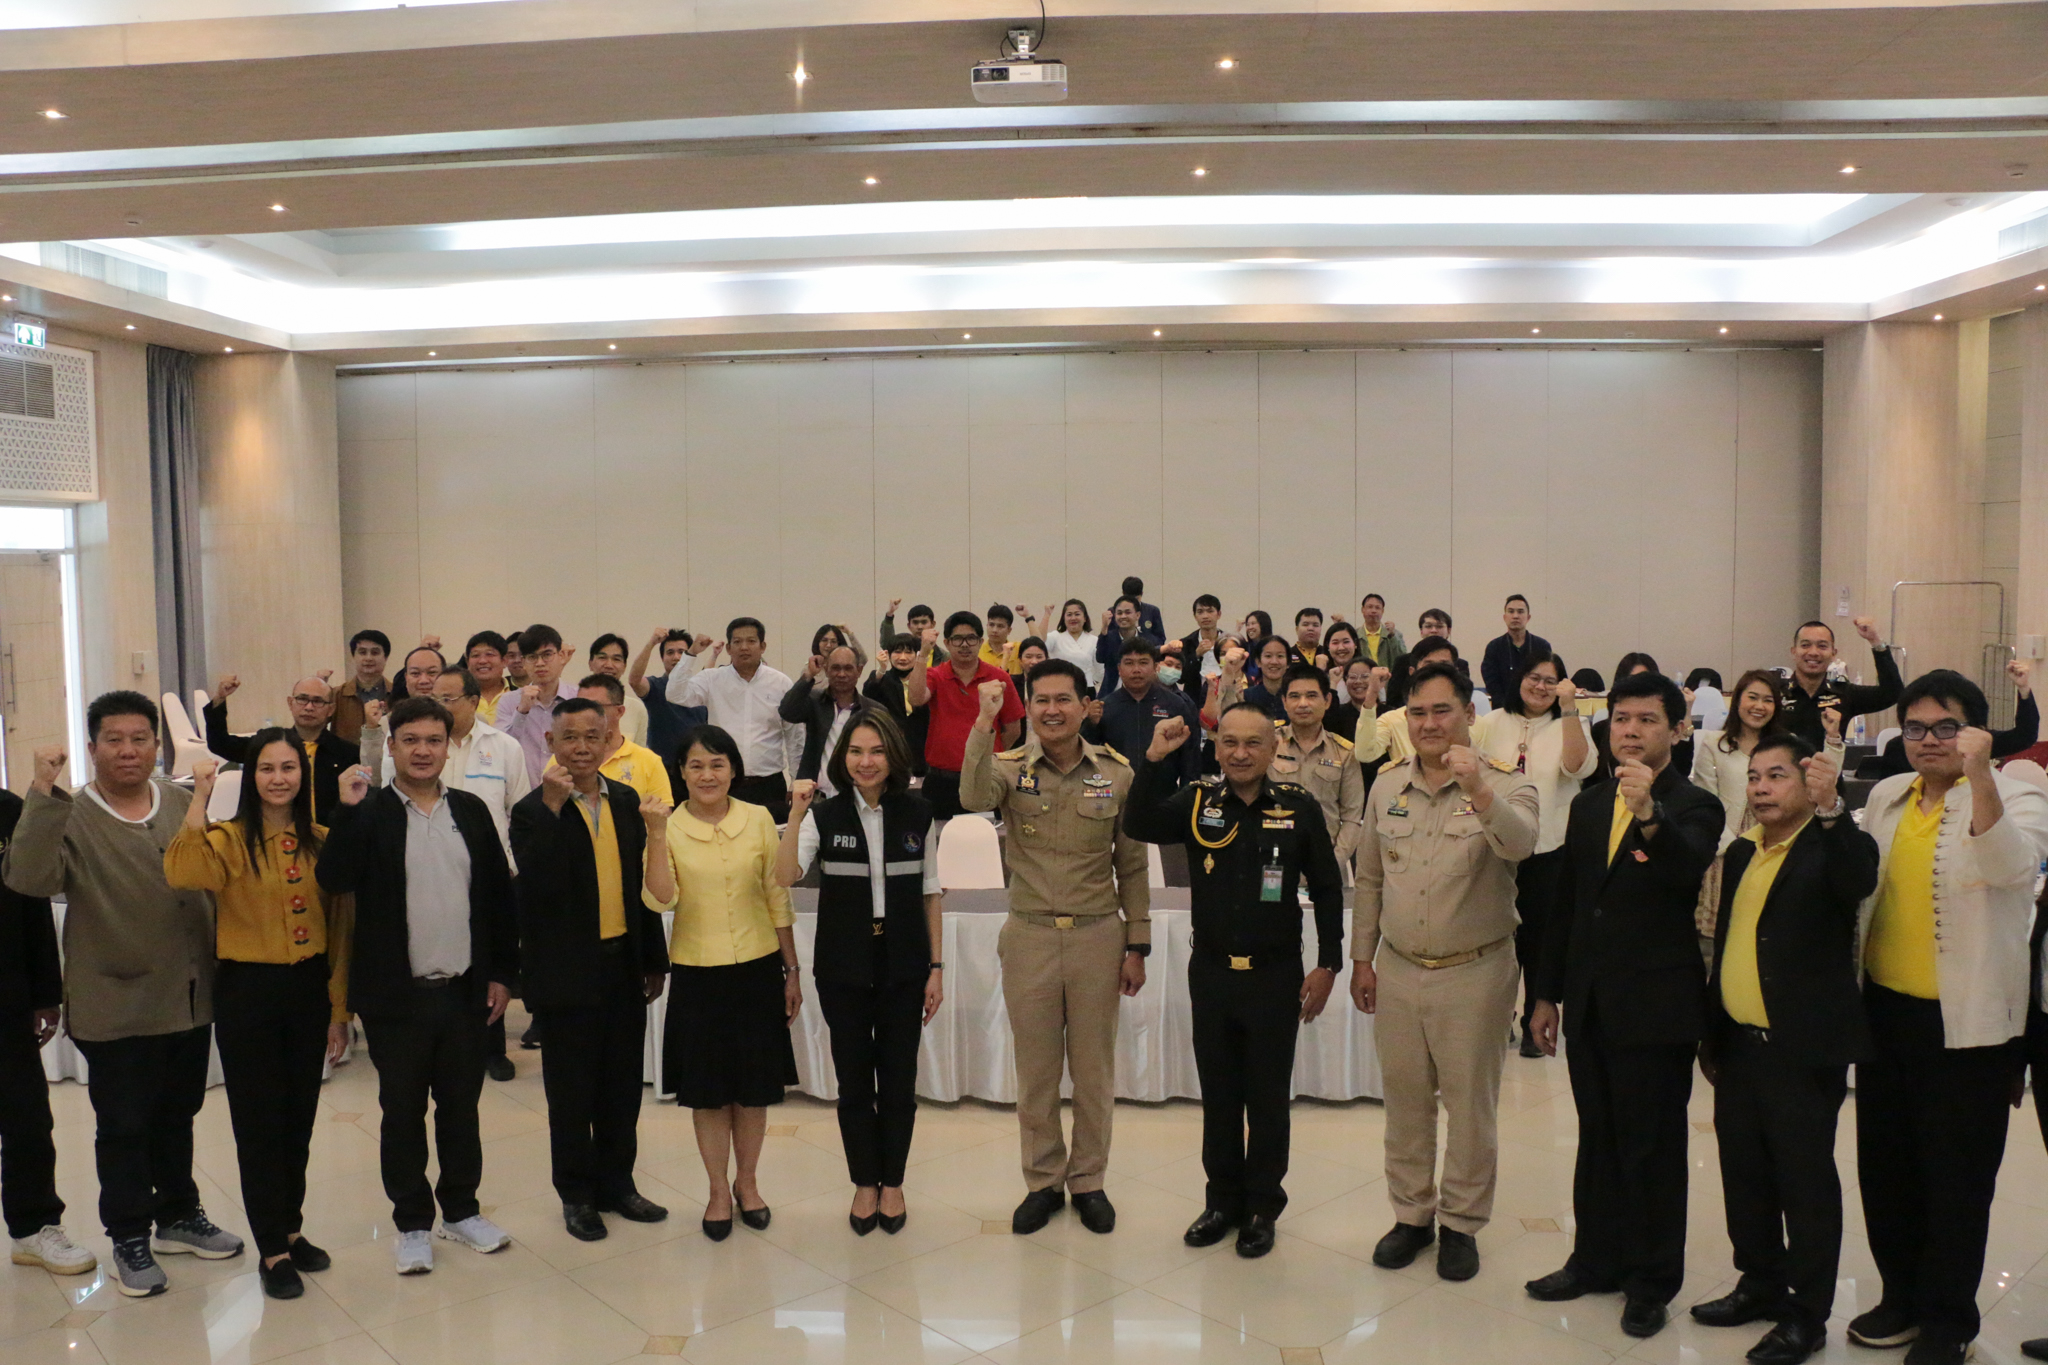 ประชุมเชิงปฏิบัติการเตรียมพร้อมแห่งชาติและแผนป้องกันบรรเทาสาธารณภัย ประเด็นการแก้ไขปัญหาฝุ่นควัน PM 2.5